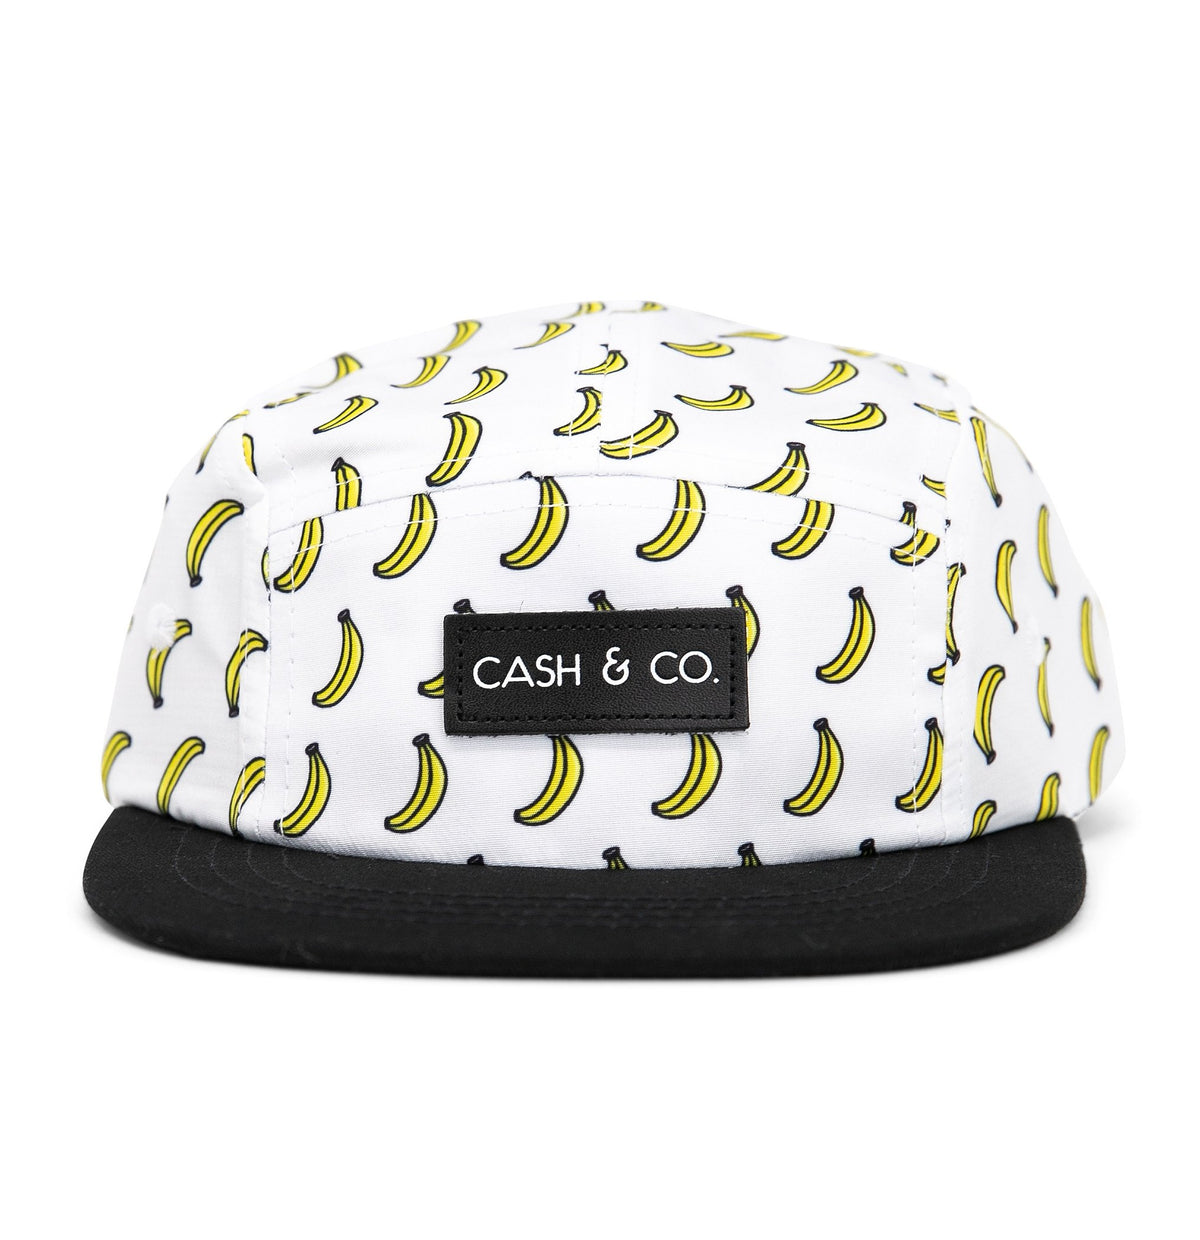 Cash & Co Basball Hat- The Banana